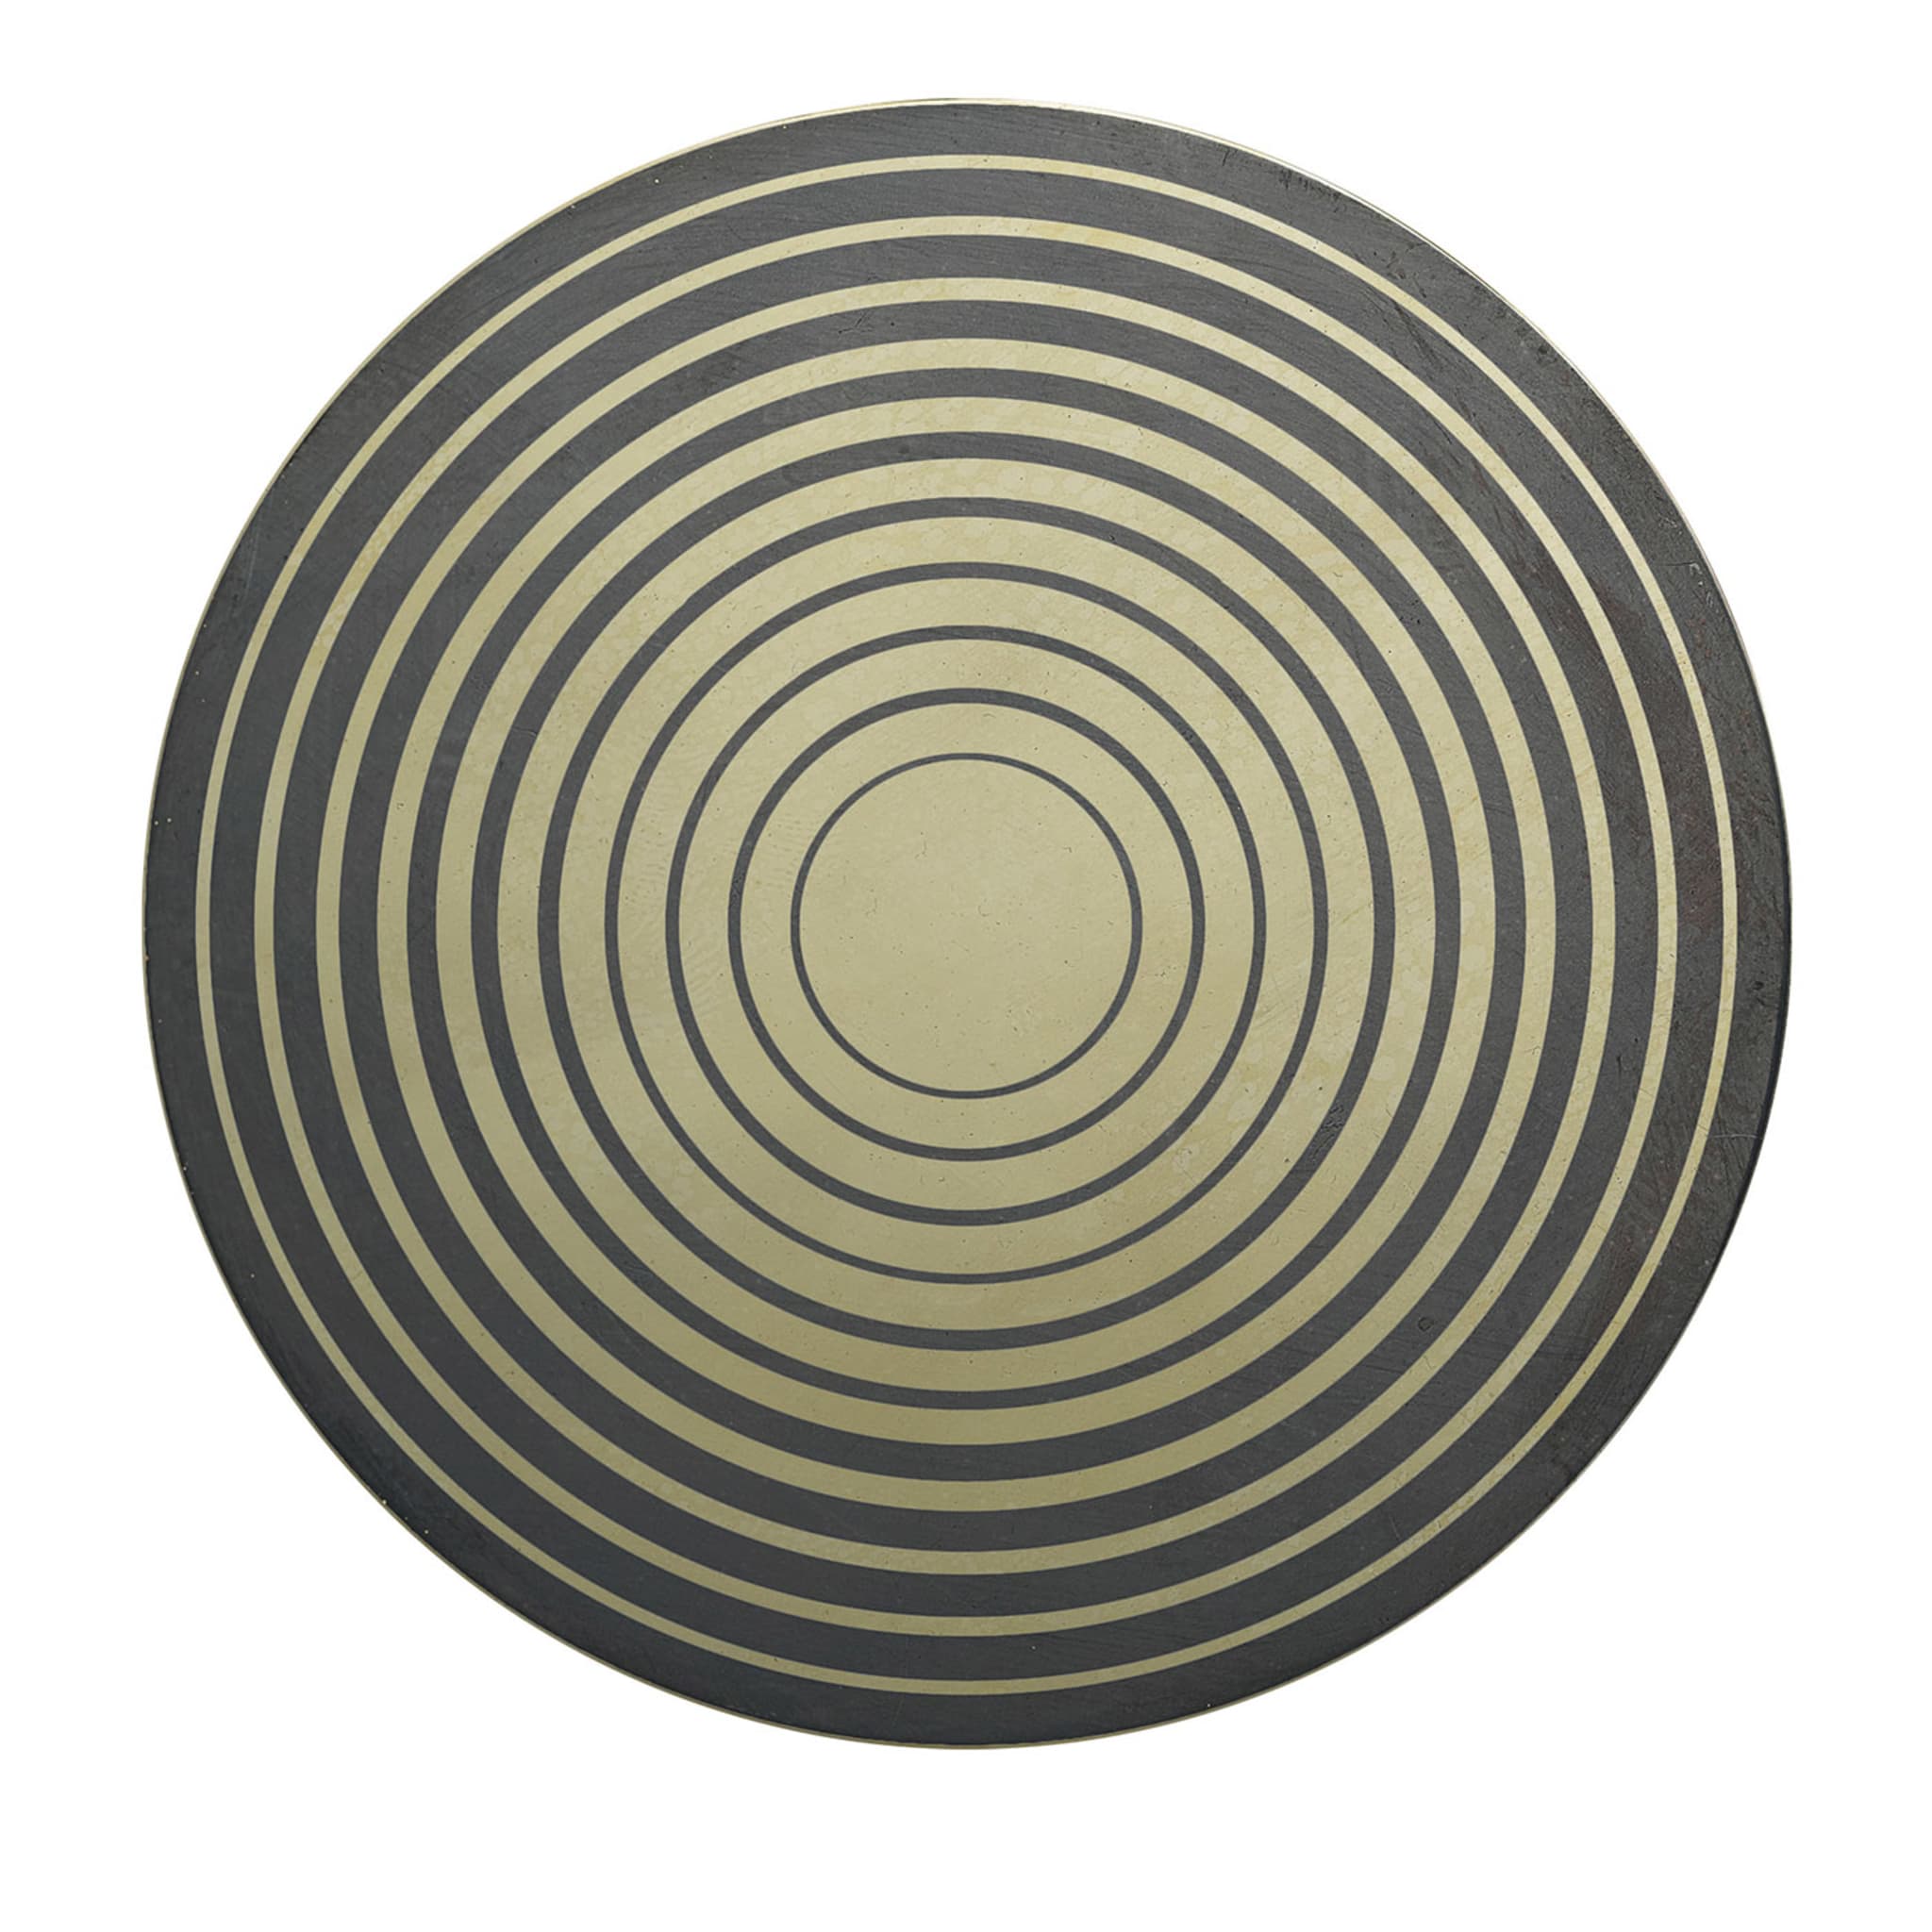 Aniconico Decorative Disk #8 - Main view